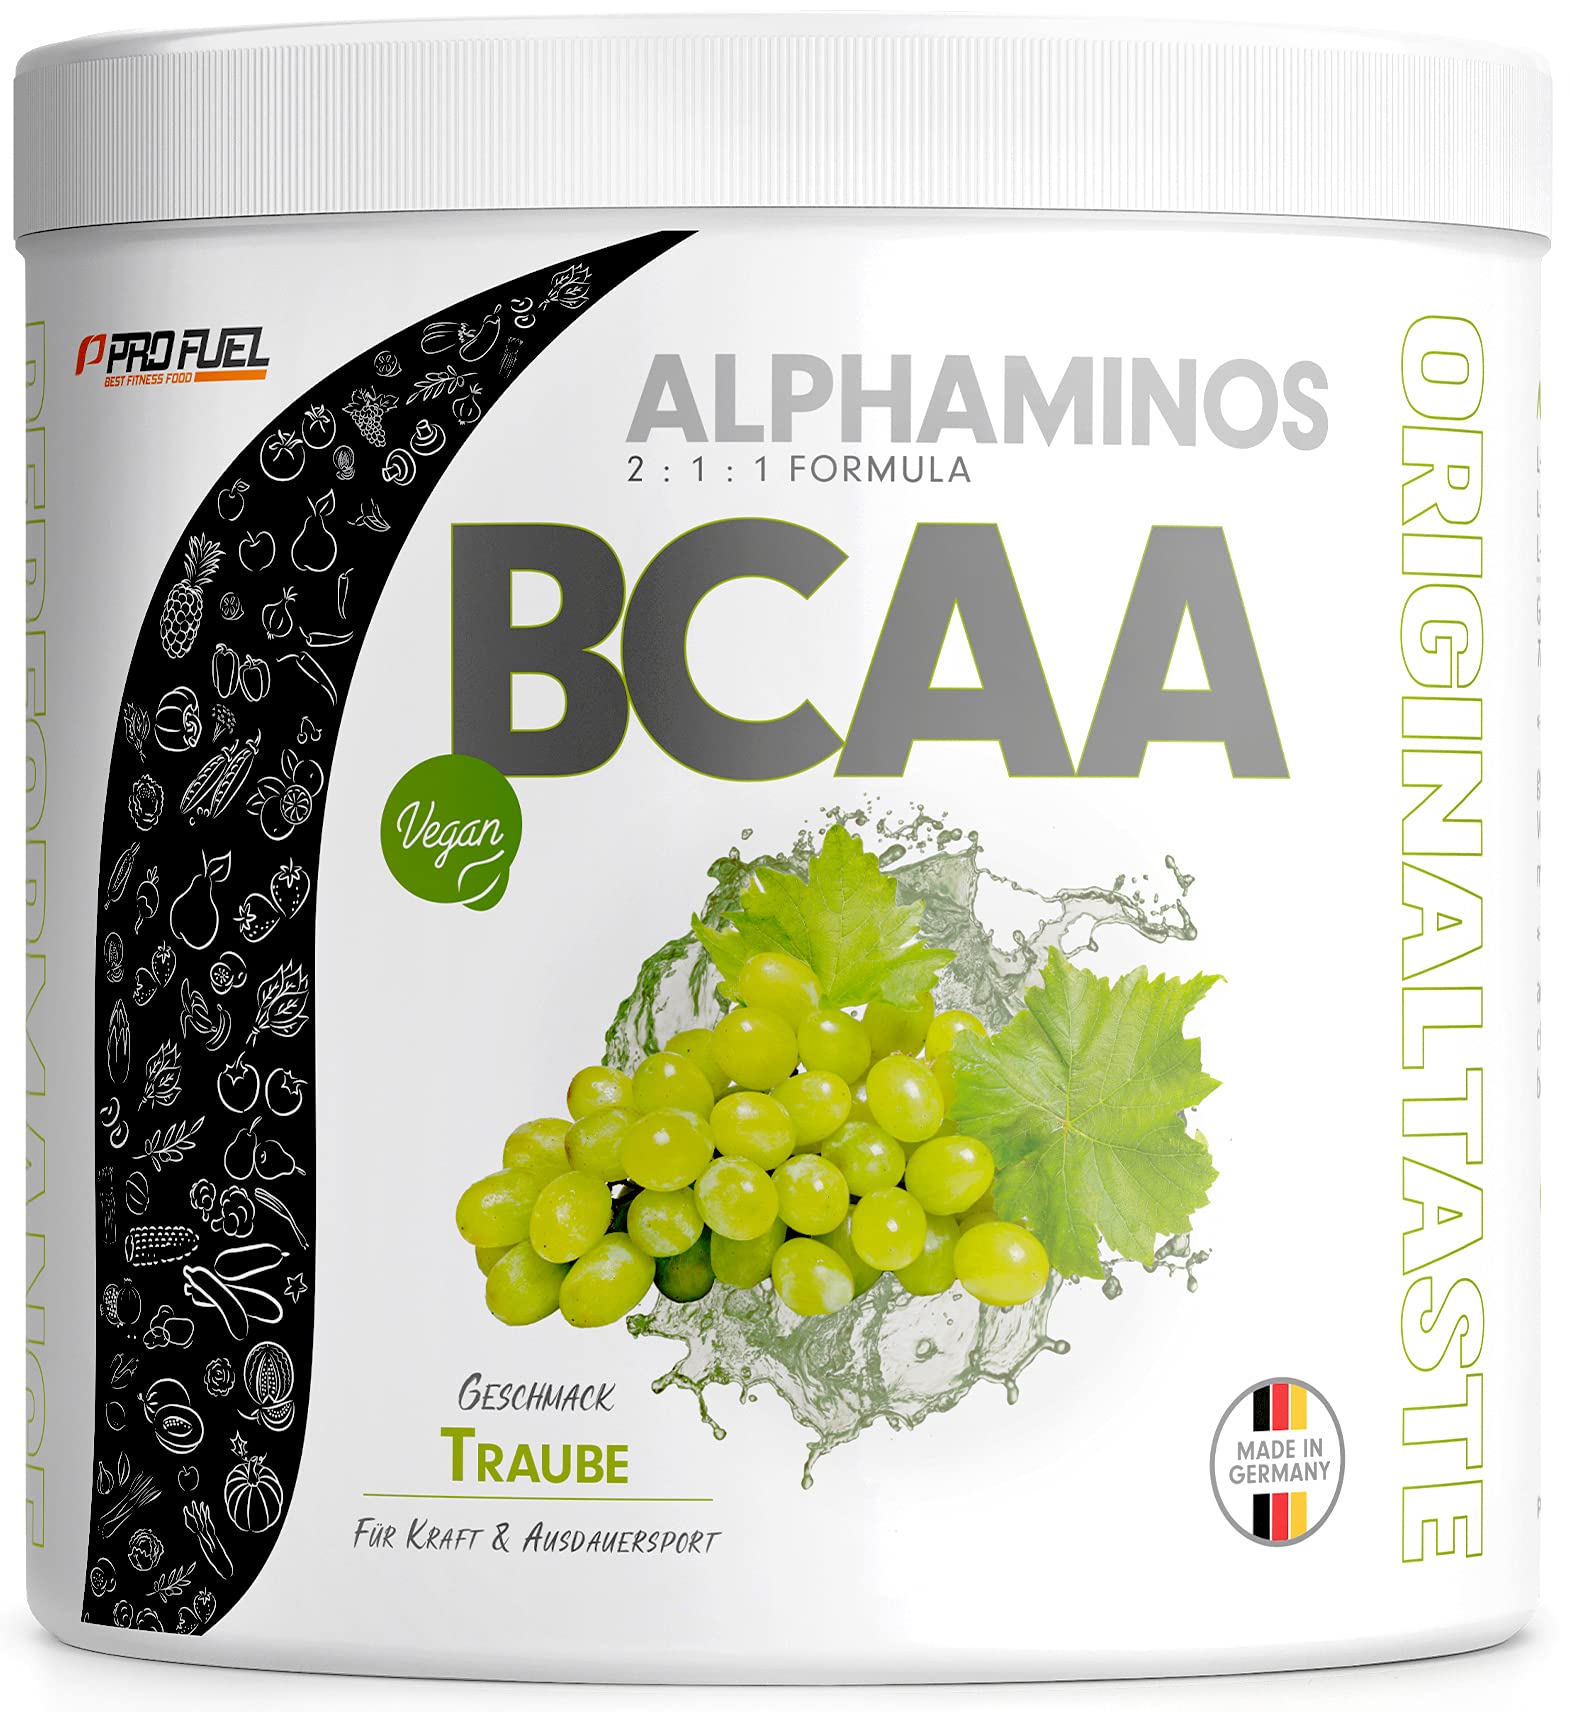 BCAA Pulver 300g Traube, TESTSIEGER Alphaminos BCAA 2:1:1 Drink, unfassbar leckerer Geschmack, Essentielle Aminosäuren Leucin, Isoleucin & Valin, 100% vegan - Top Löslichkeit - Laborgeprüft